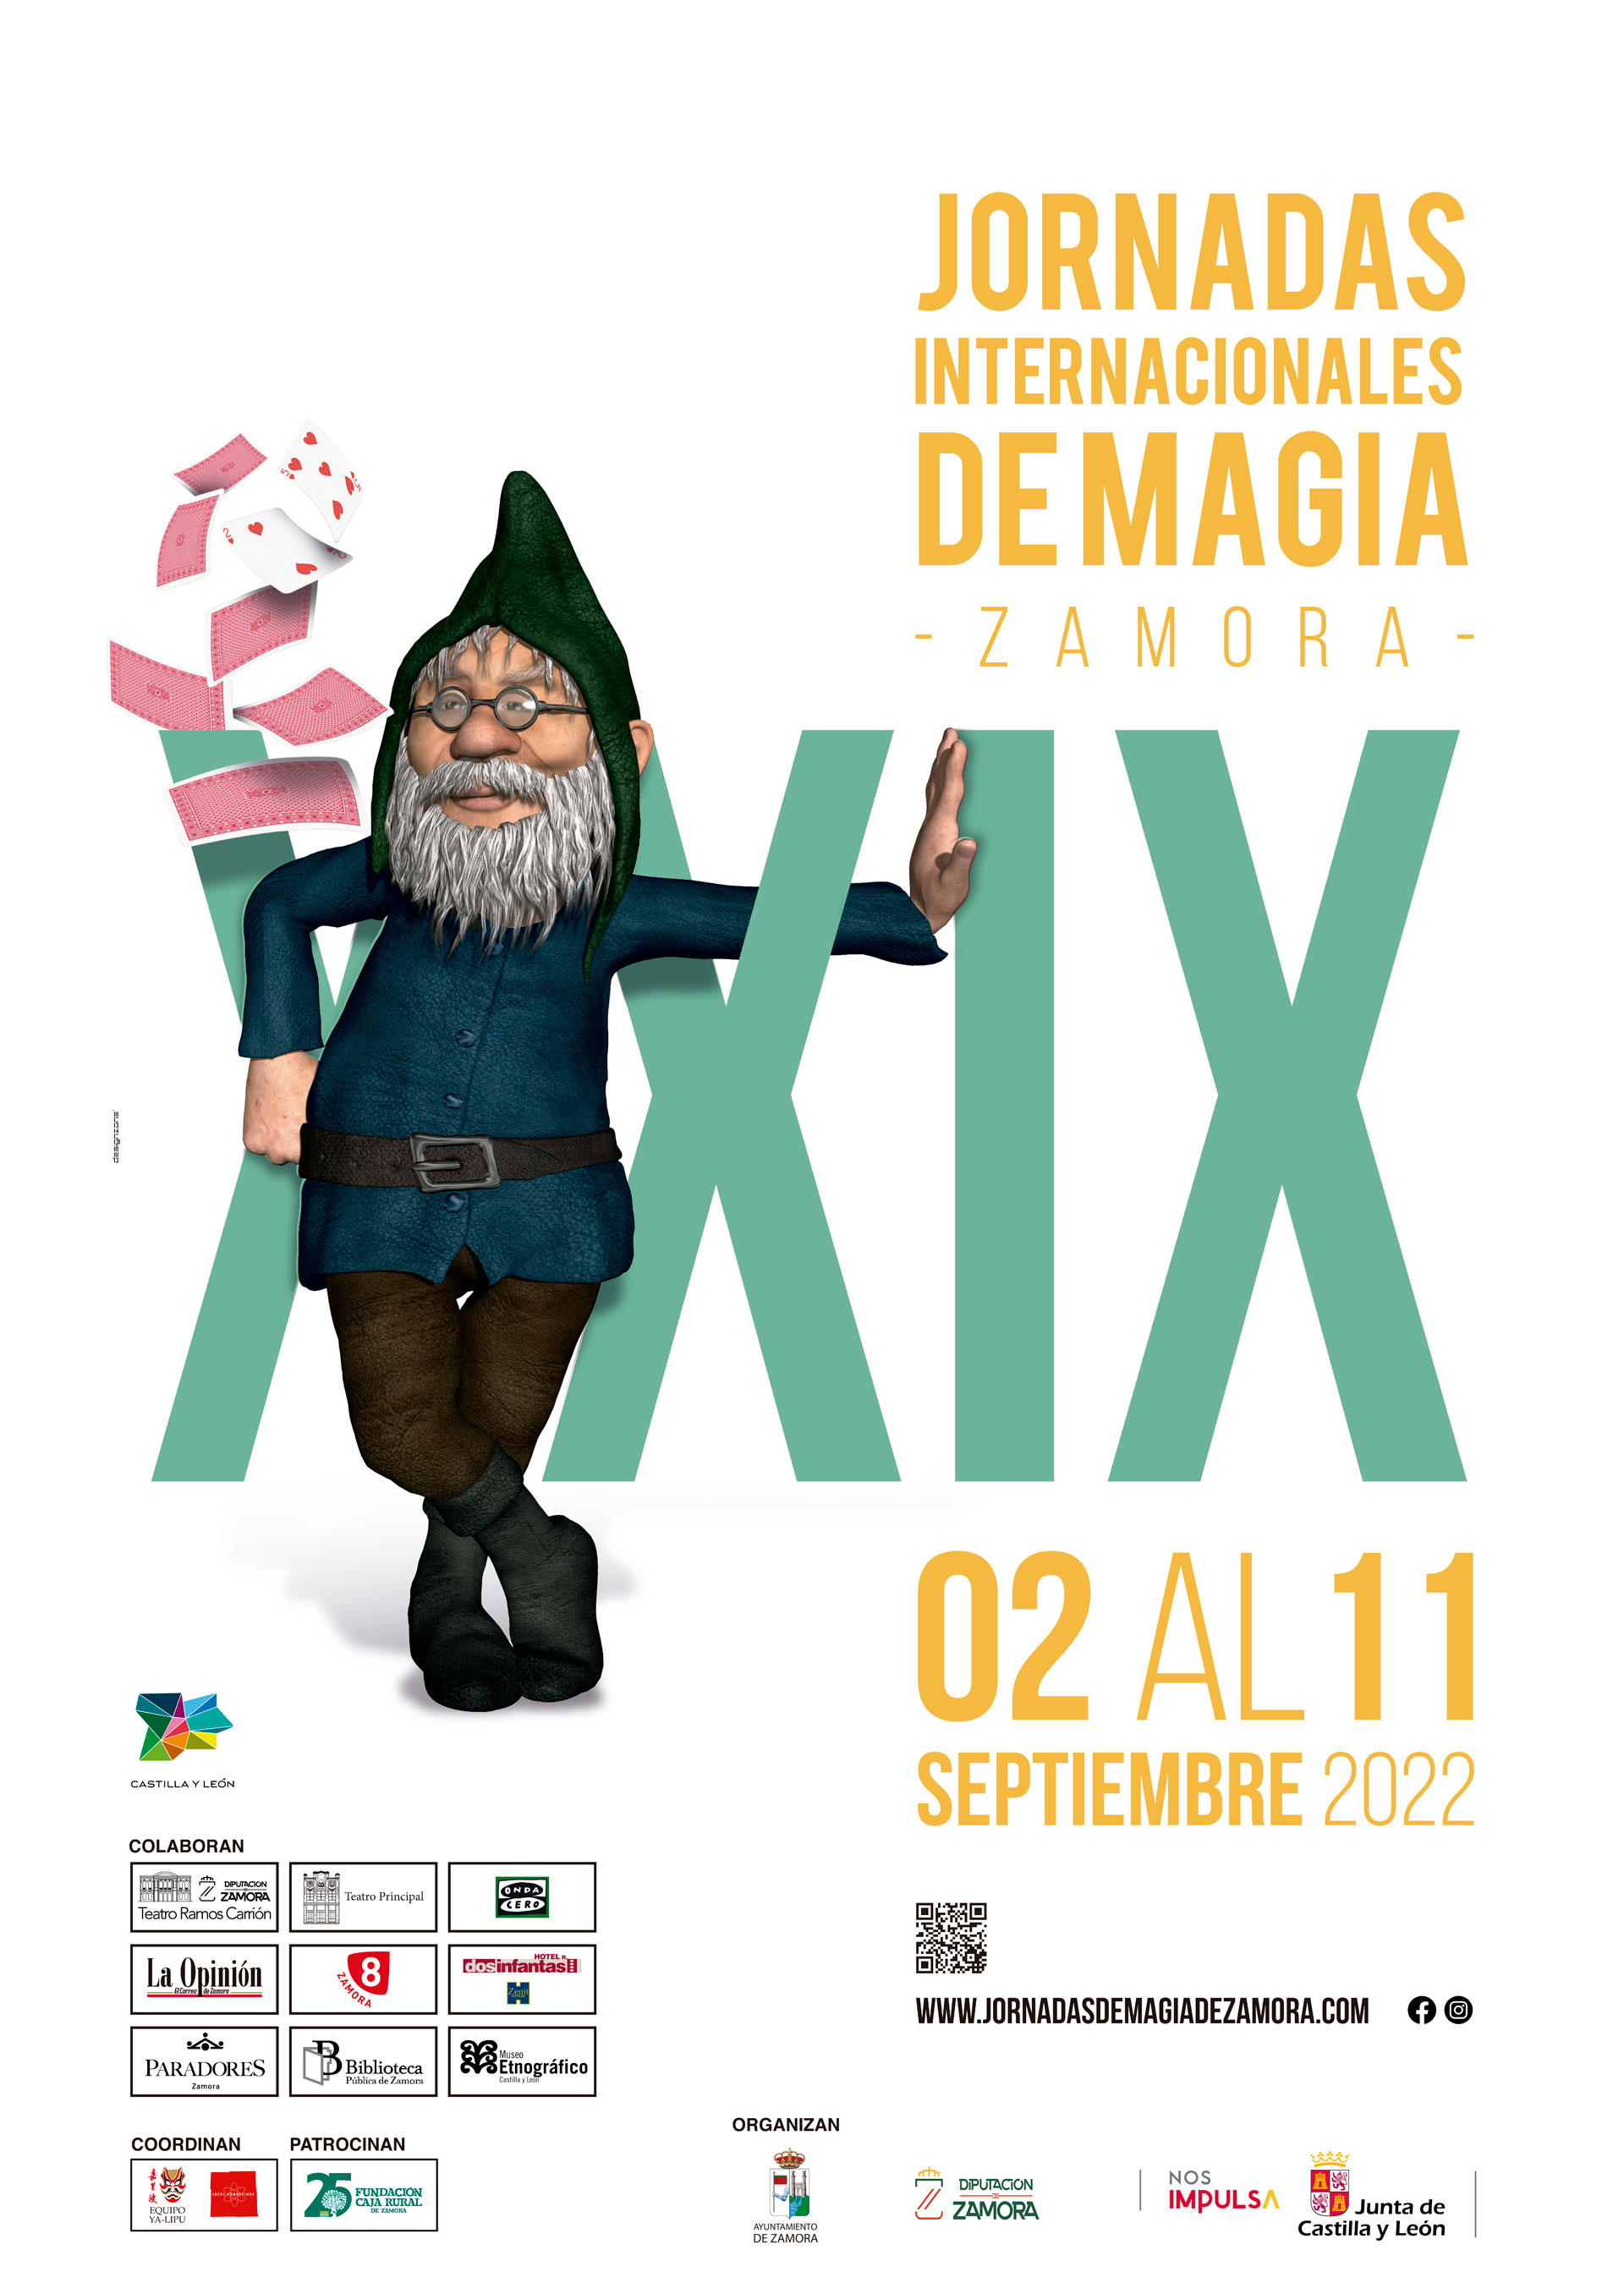 Jornadas Internacionales de magia en Zamora